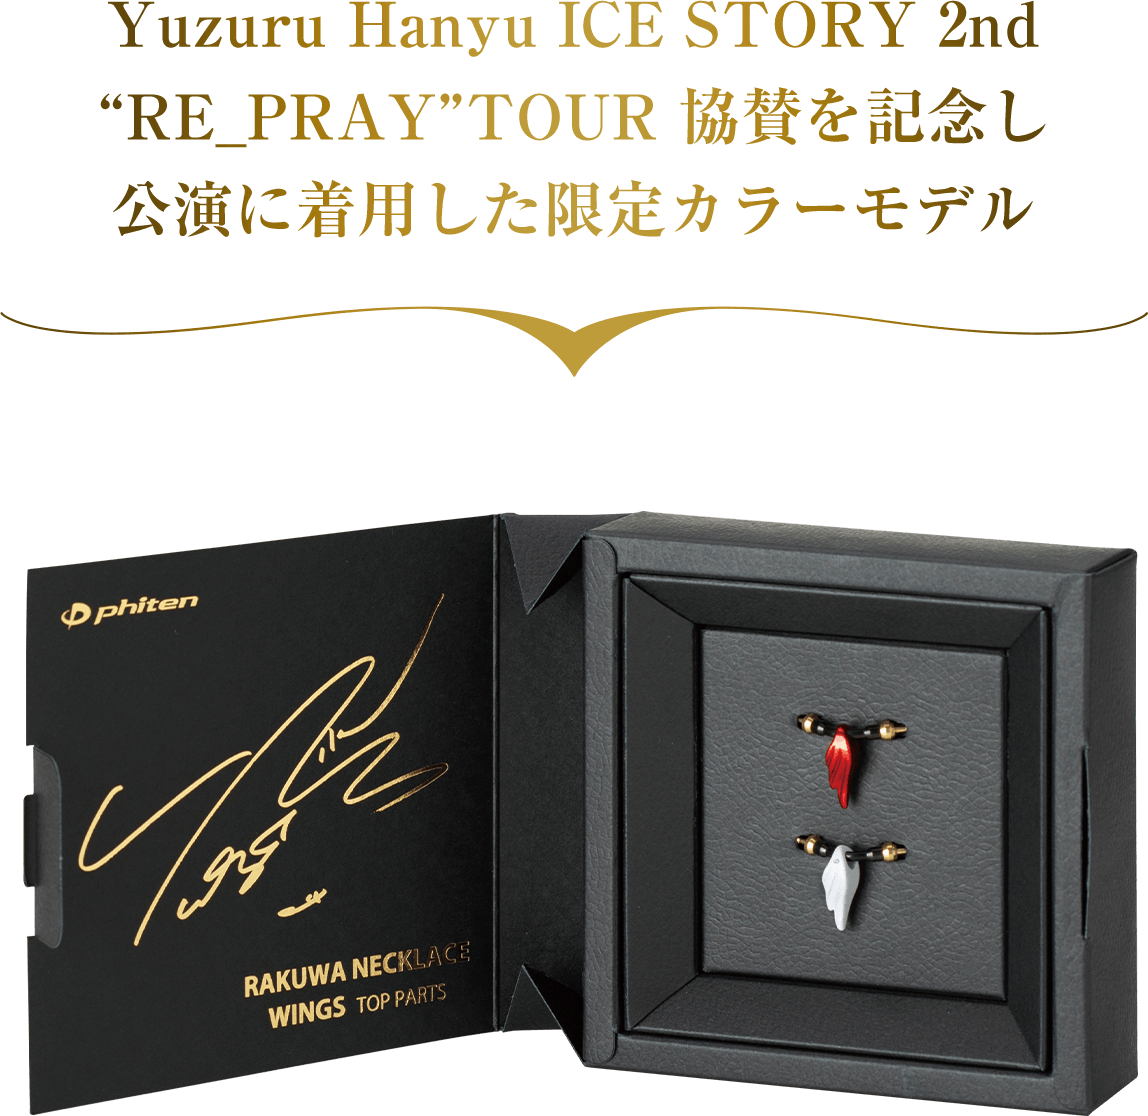 Yuzuru Hanyu ICE STORY 2nd “RE_PRAY” TOUR 協賛を記念し公演に着用した限定カラーモデル